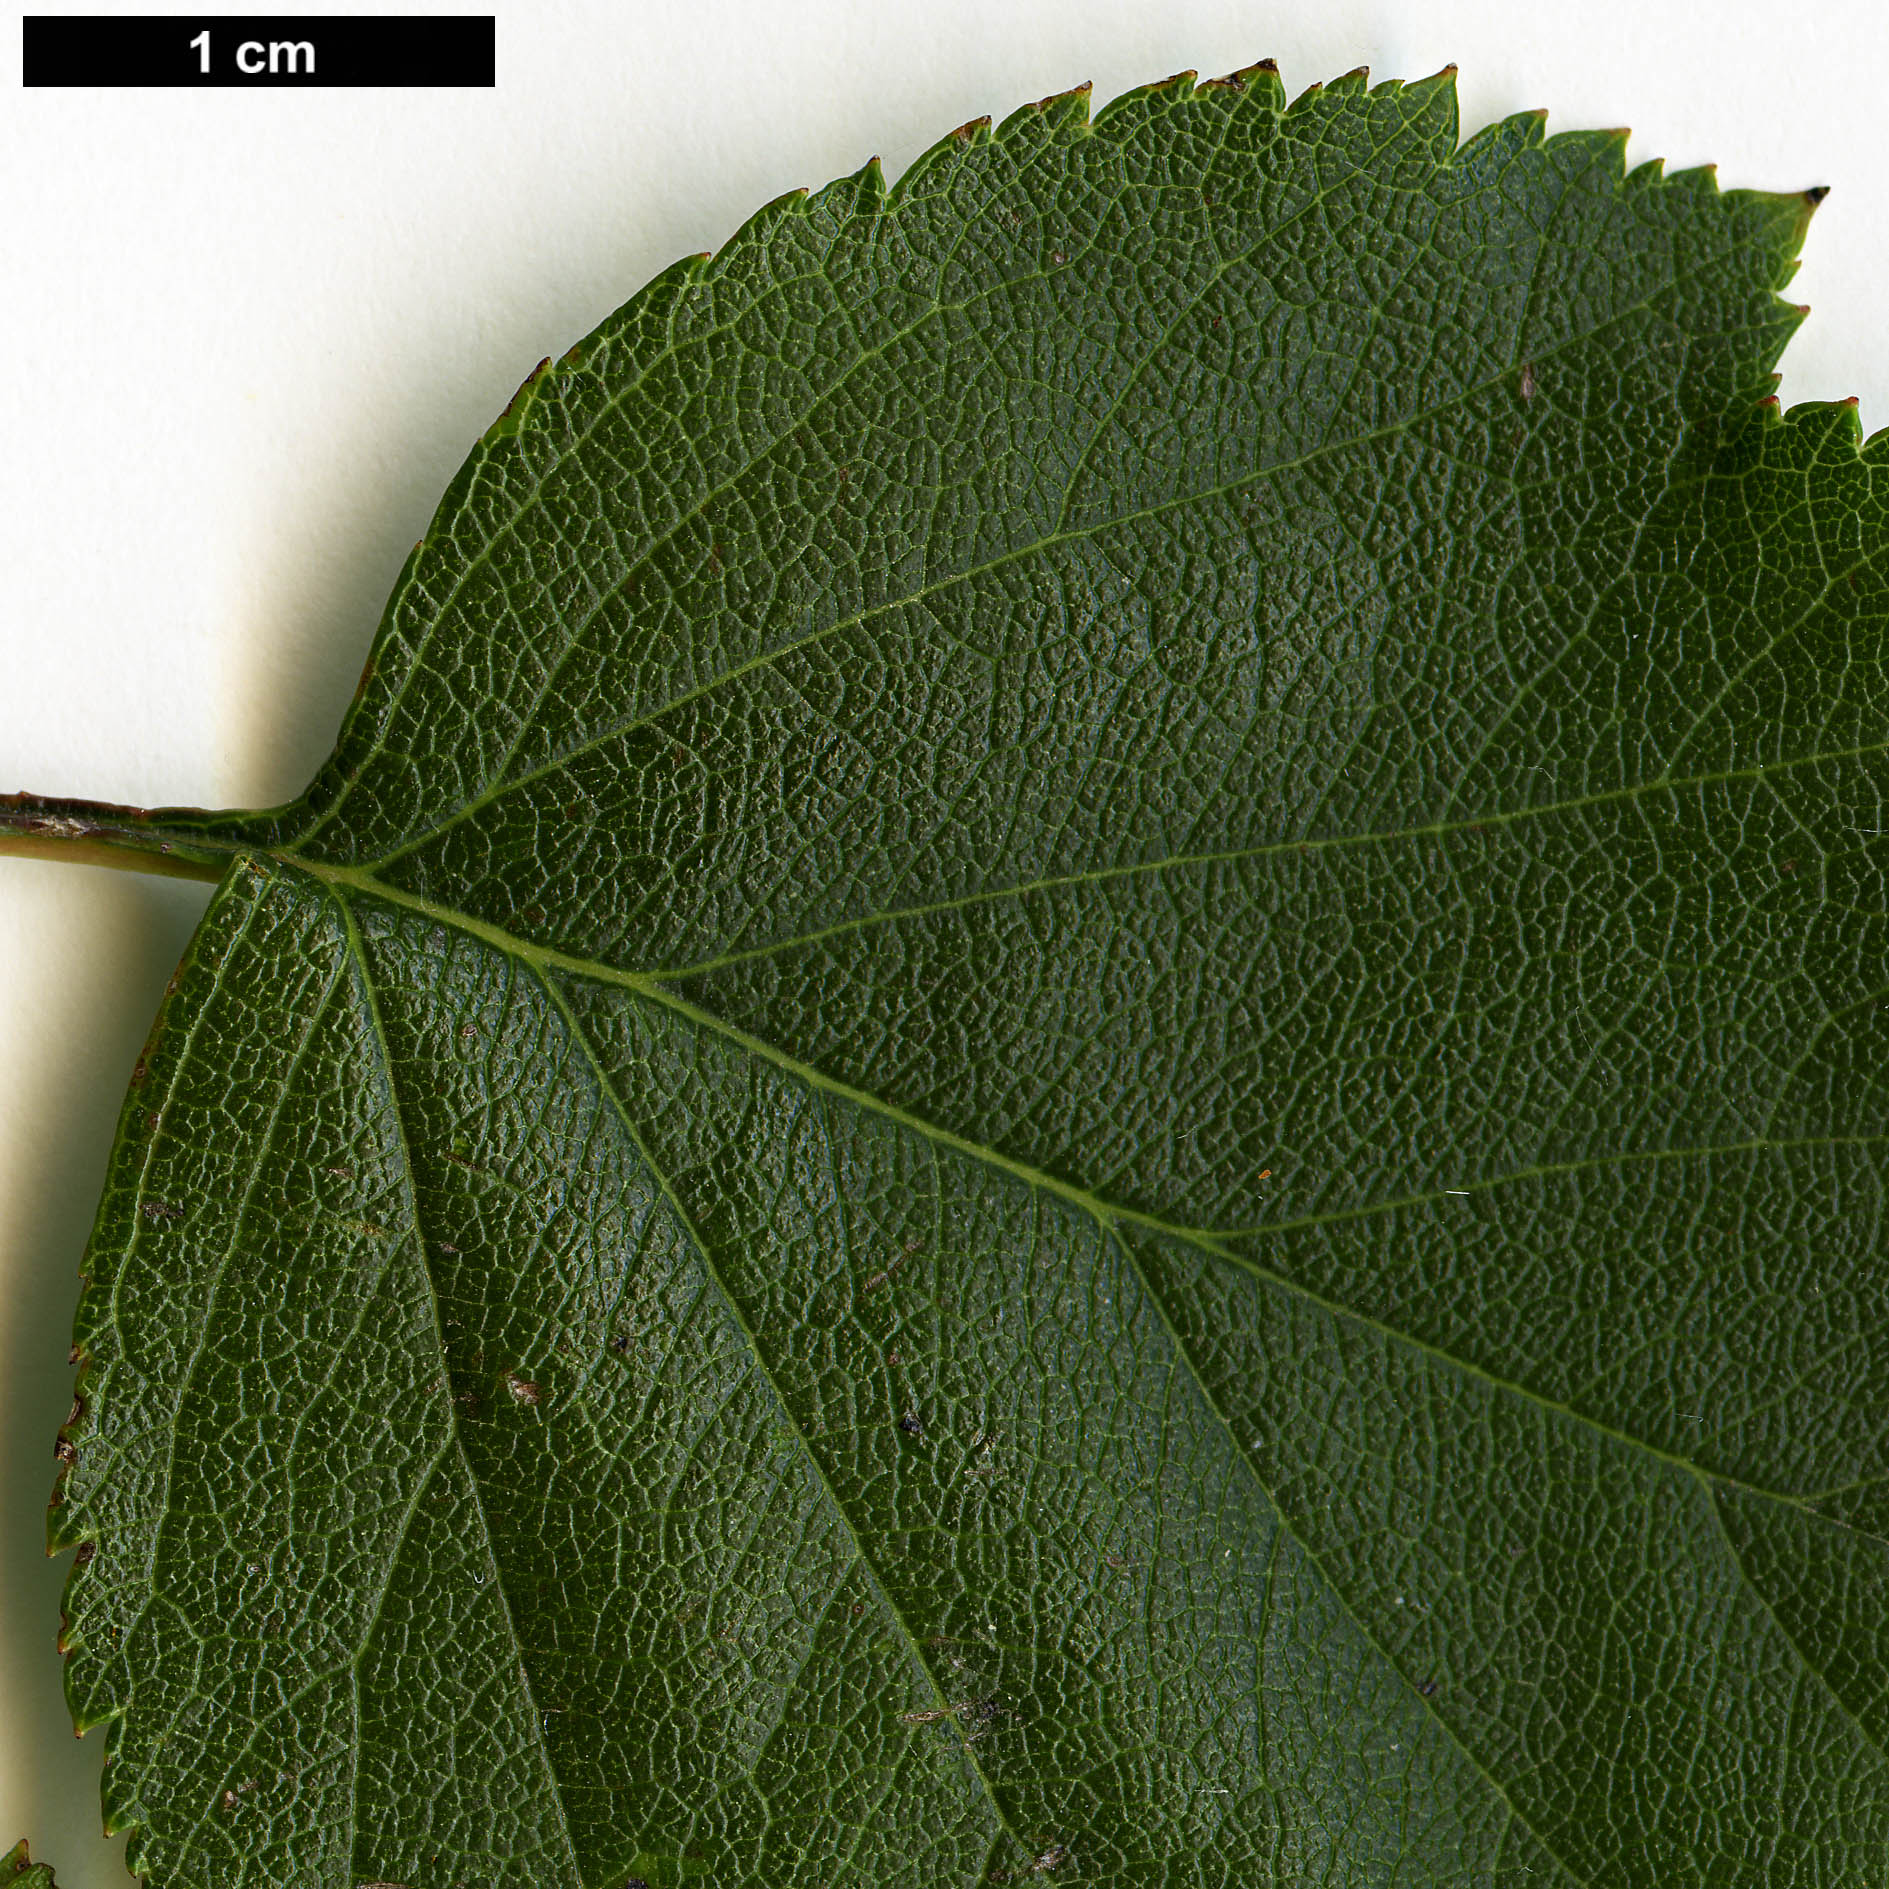 High resolution image: Family: Rosaceae - Genus: Crataegus - Taxon: iracunda